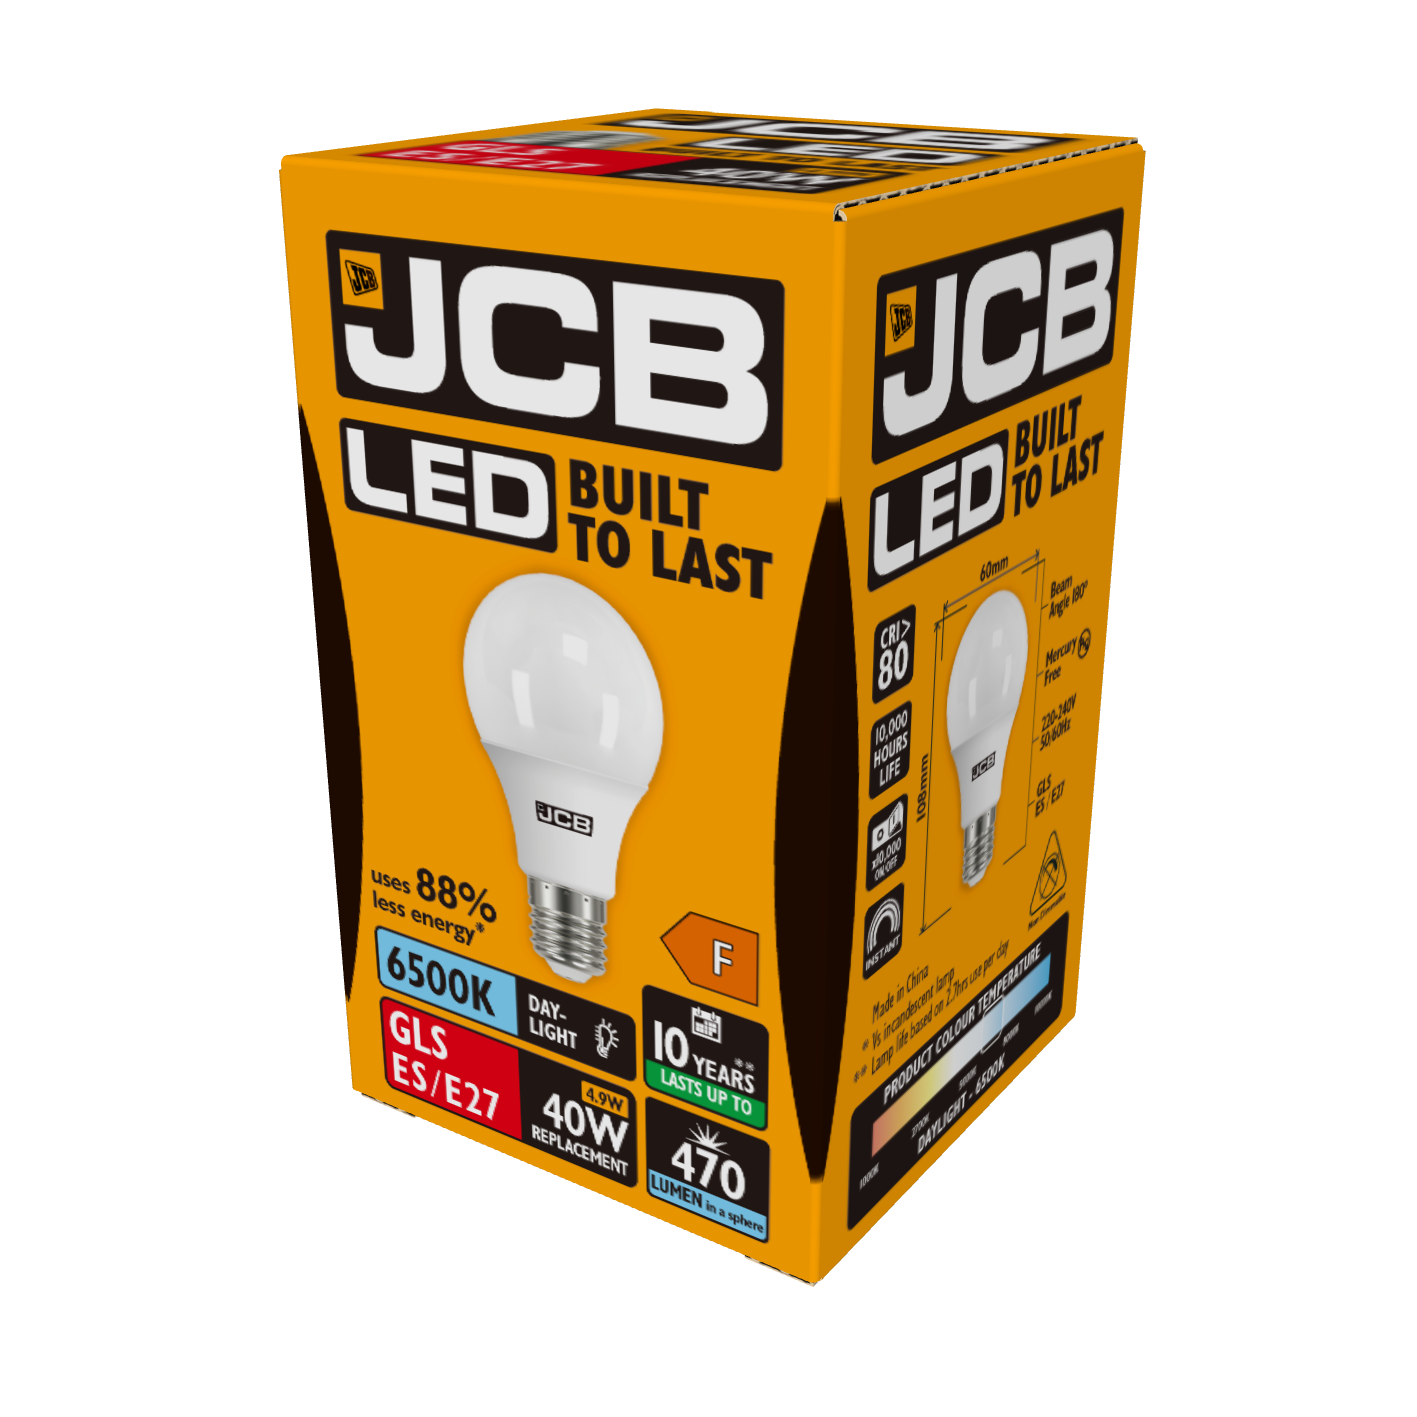 JCB LED GLS E27 (ES) 470 lm 4,9 W 6.500 K (Tageslicht), Packung mit 1 Stück